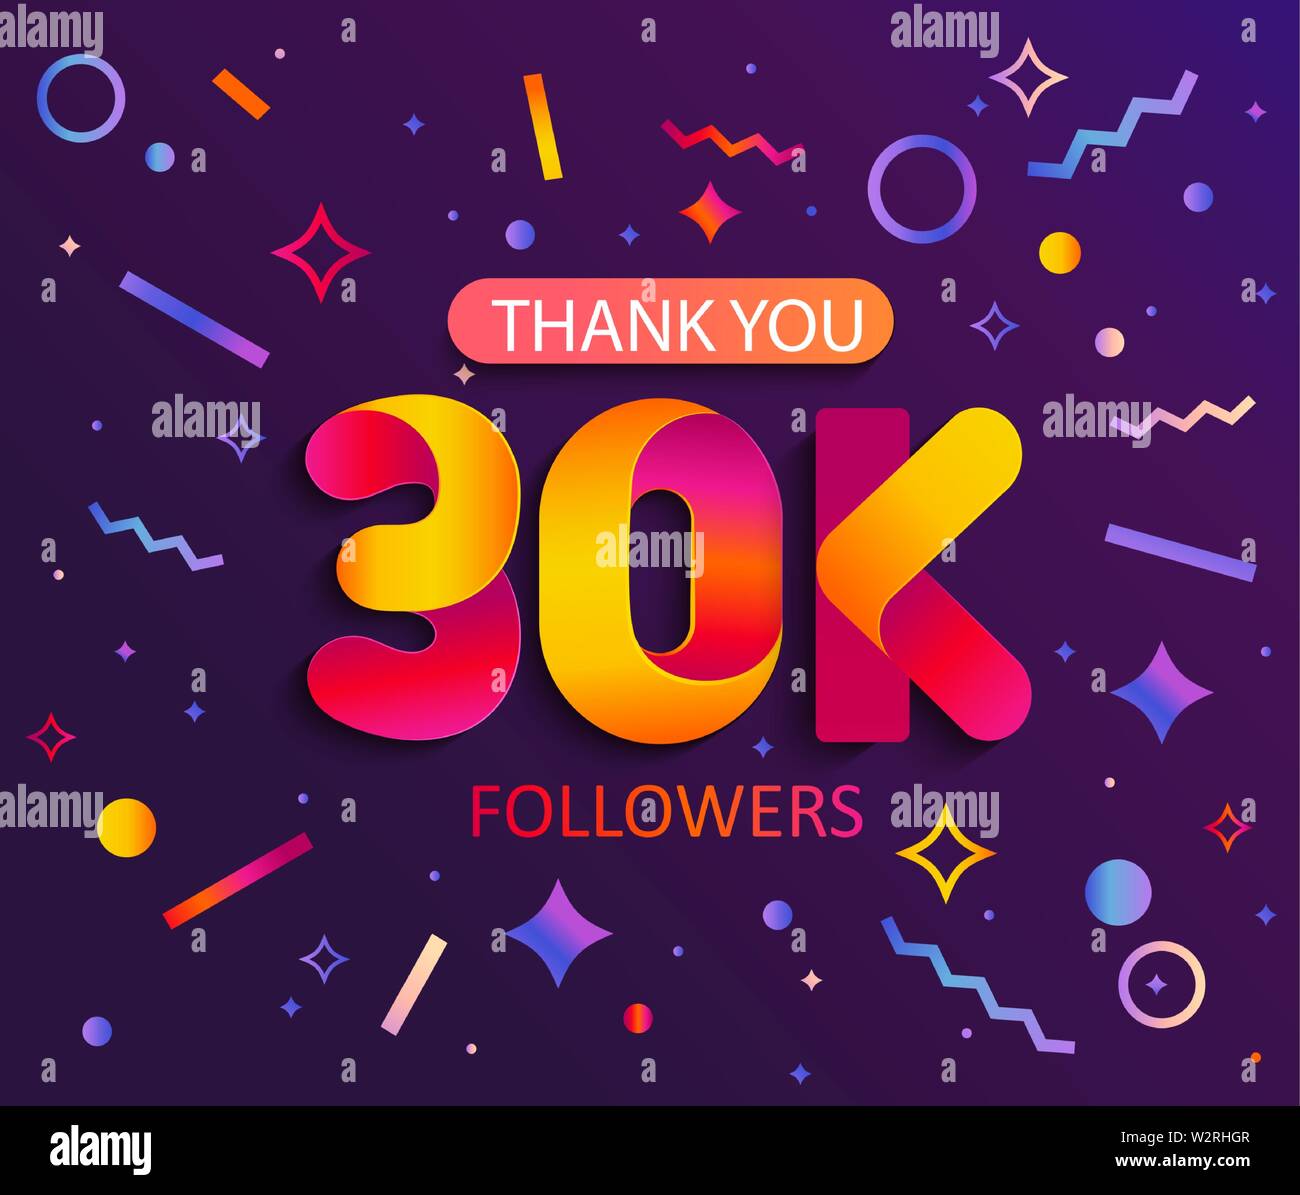 Vielen Dank 30000 Anhänger, dank Banner. 30K Anhänger glückwunsch Karte mit geometrischen Figuren, Linien, Rechtecke, Kreise, die soziale Netzwerke. Web Blogger, Stock Vektor